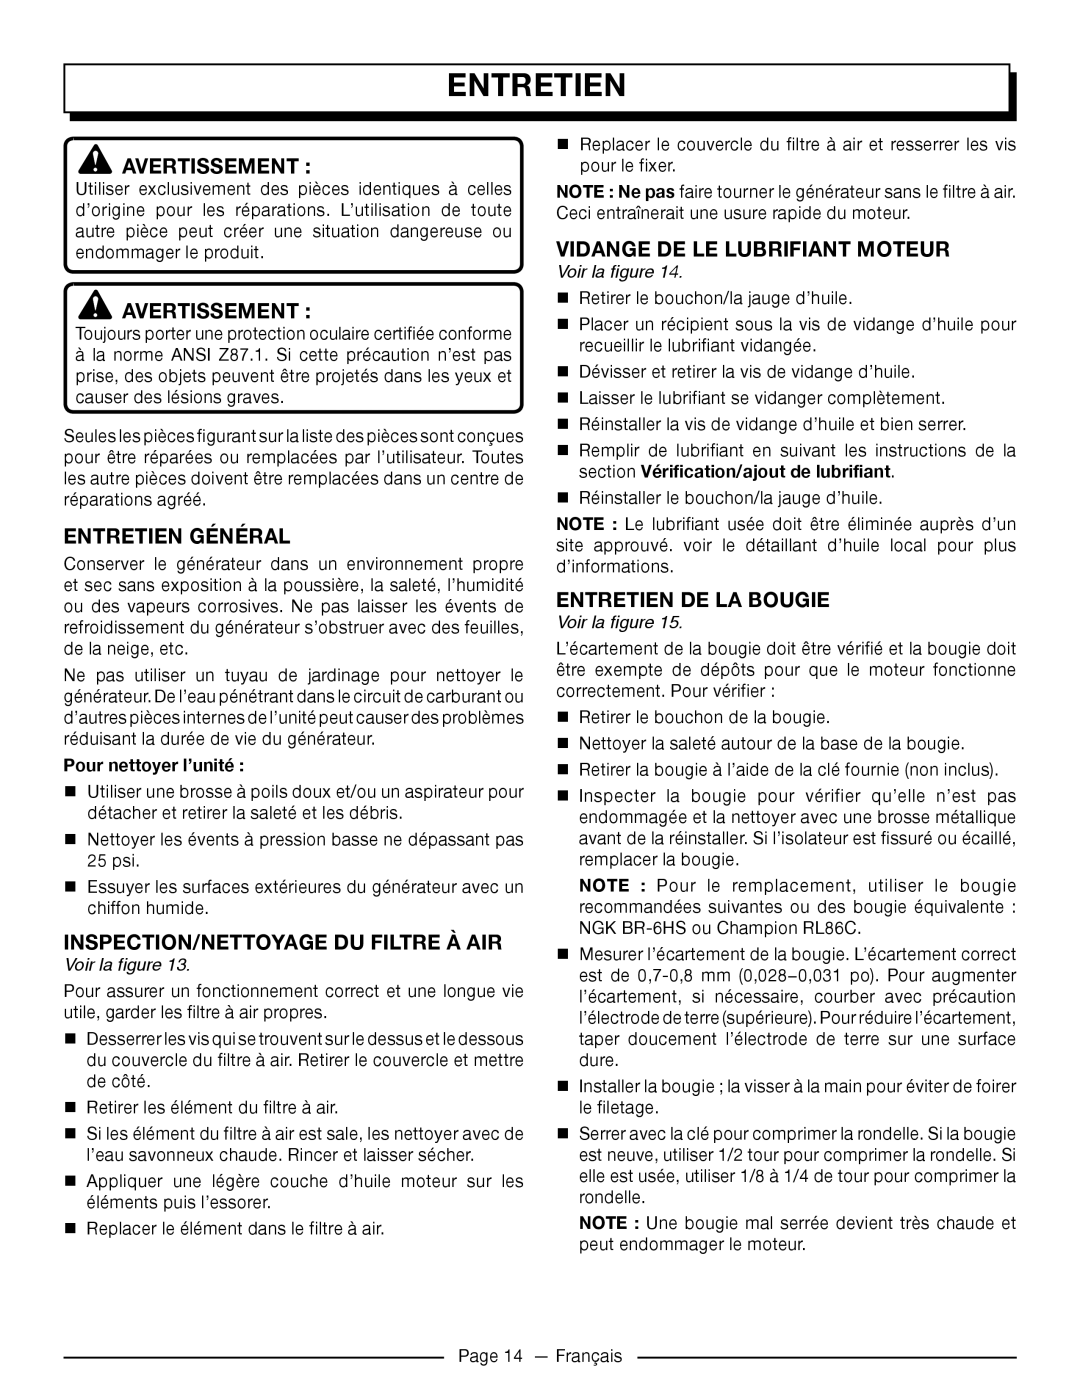 Homelite UT905011 Entretien Général, Inspection/Nettoyage Du Filtre À Air, Vidange De Le Lubrifiant Moteur 